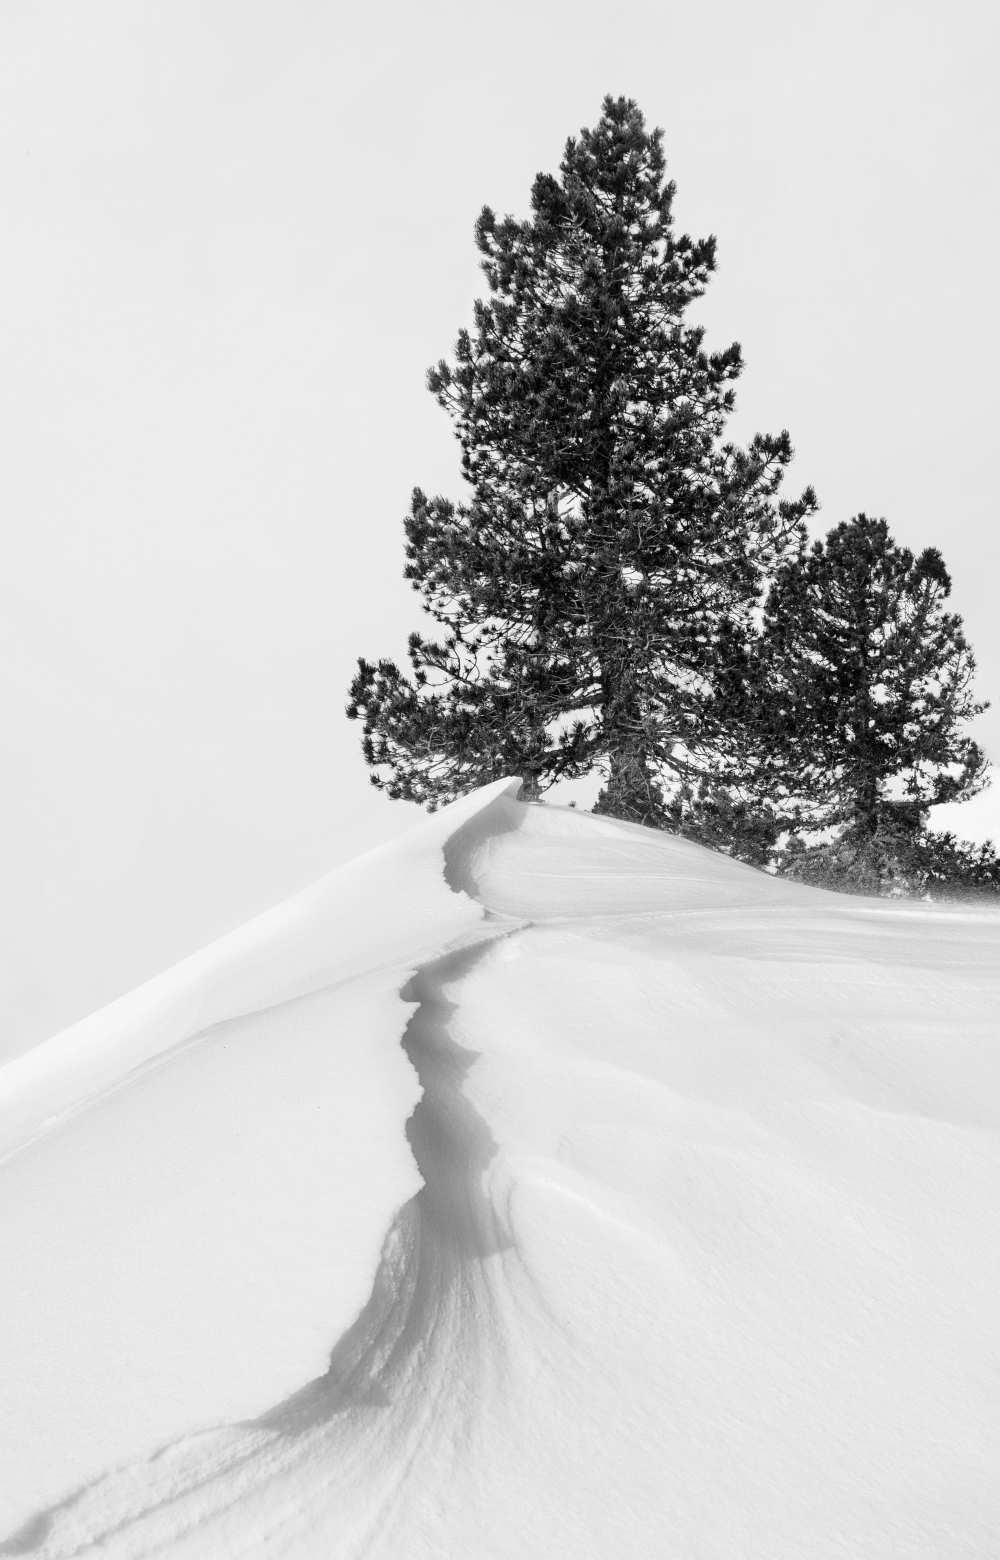 Titolo dell\'immagine : Rodrigo Núñez Buj - About the snow and forms